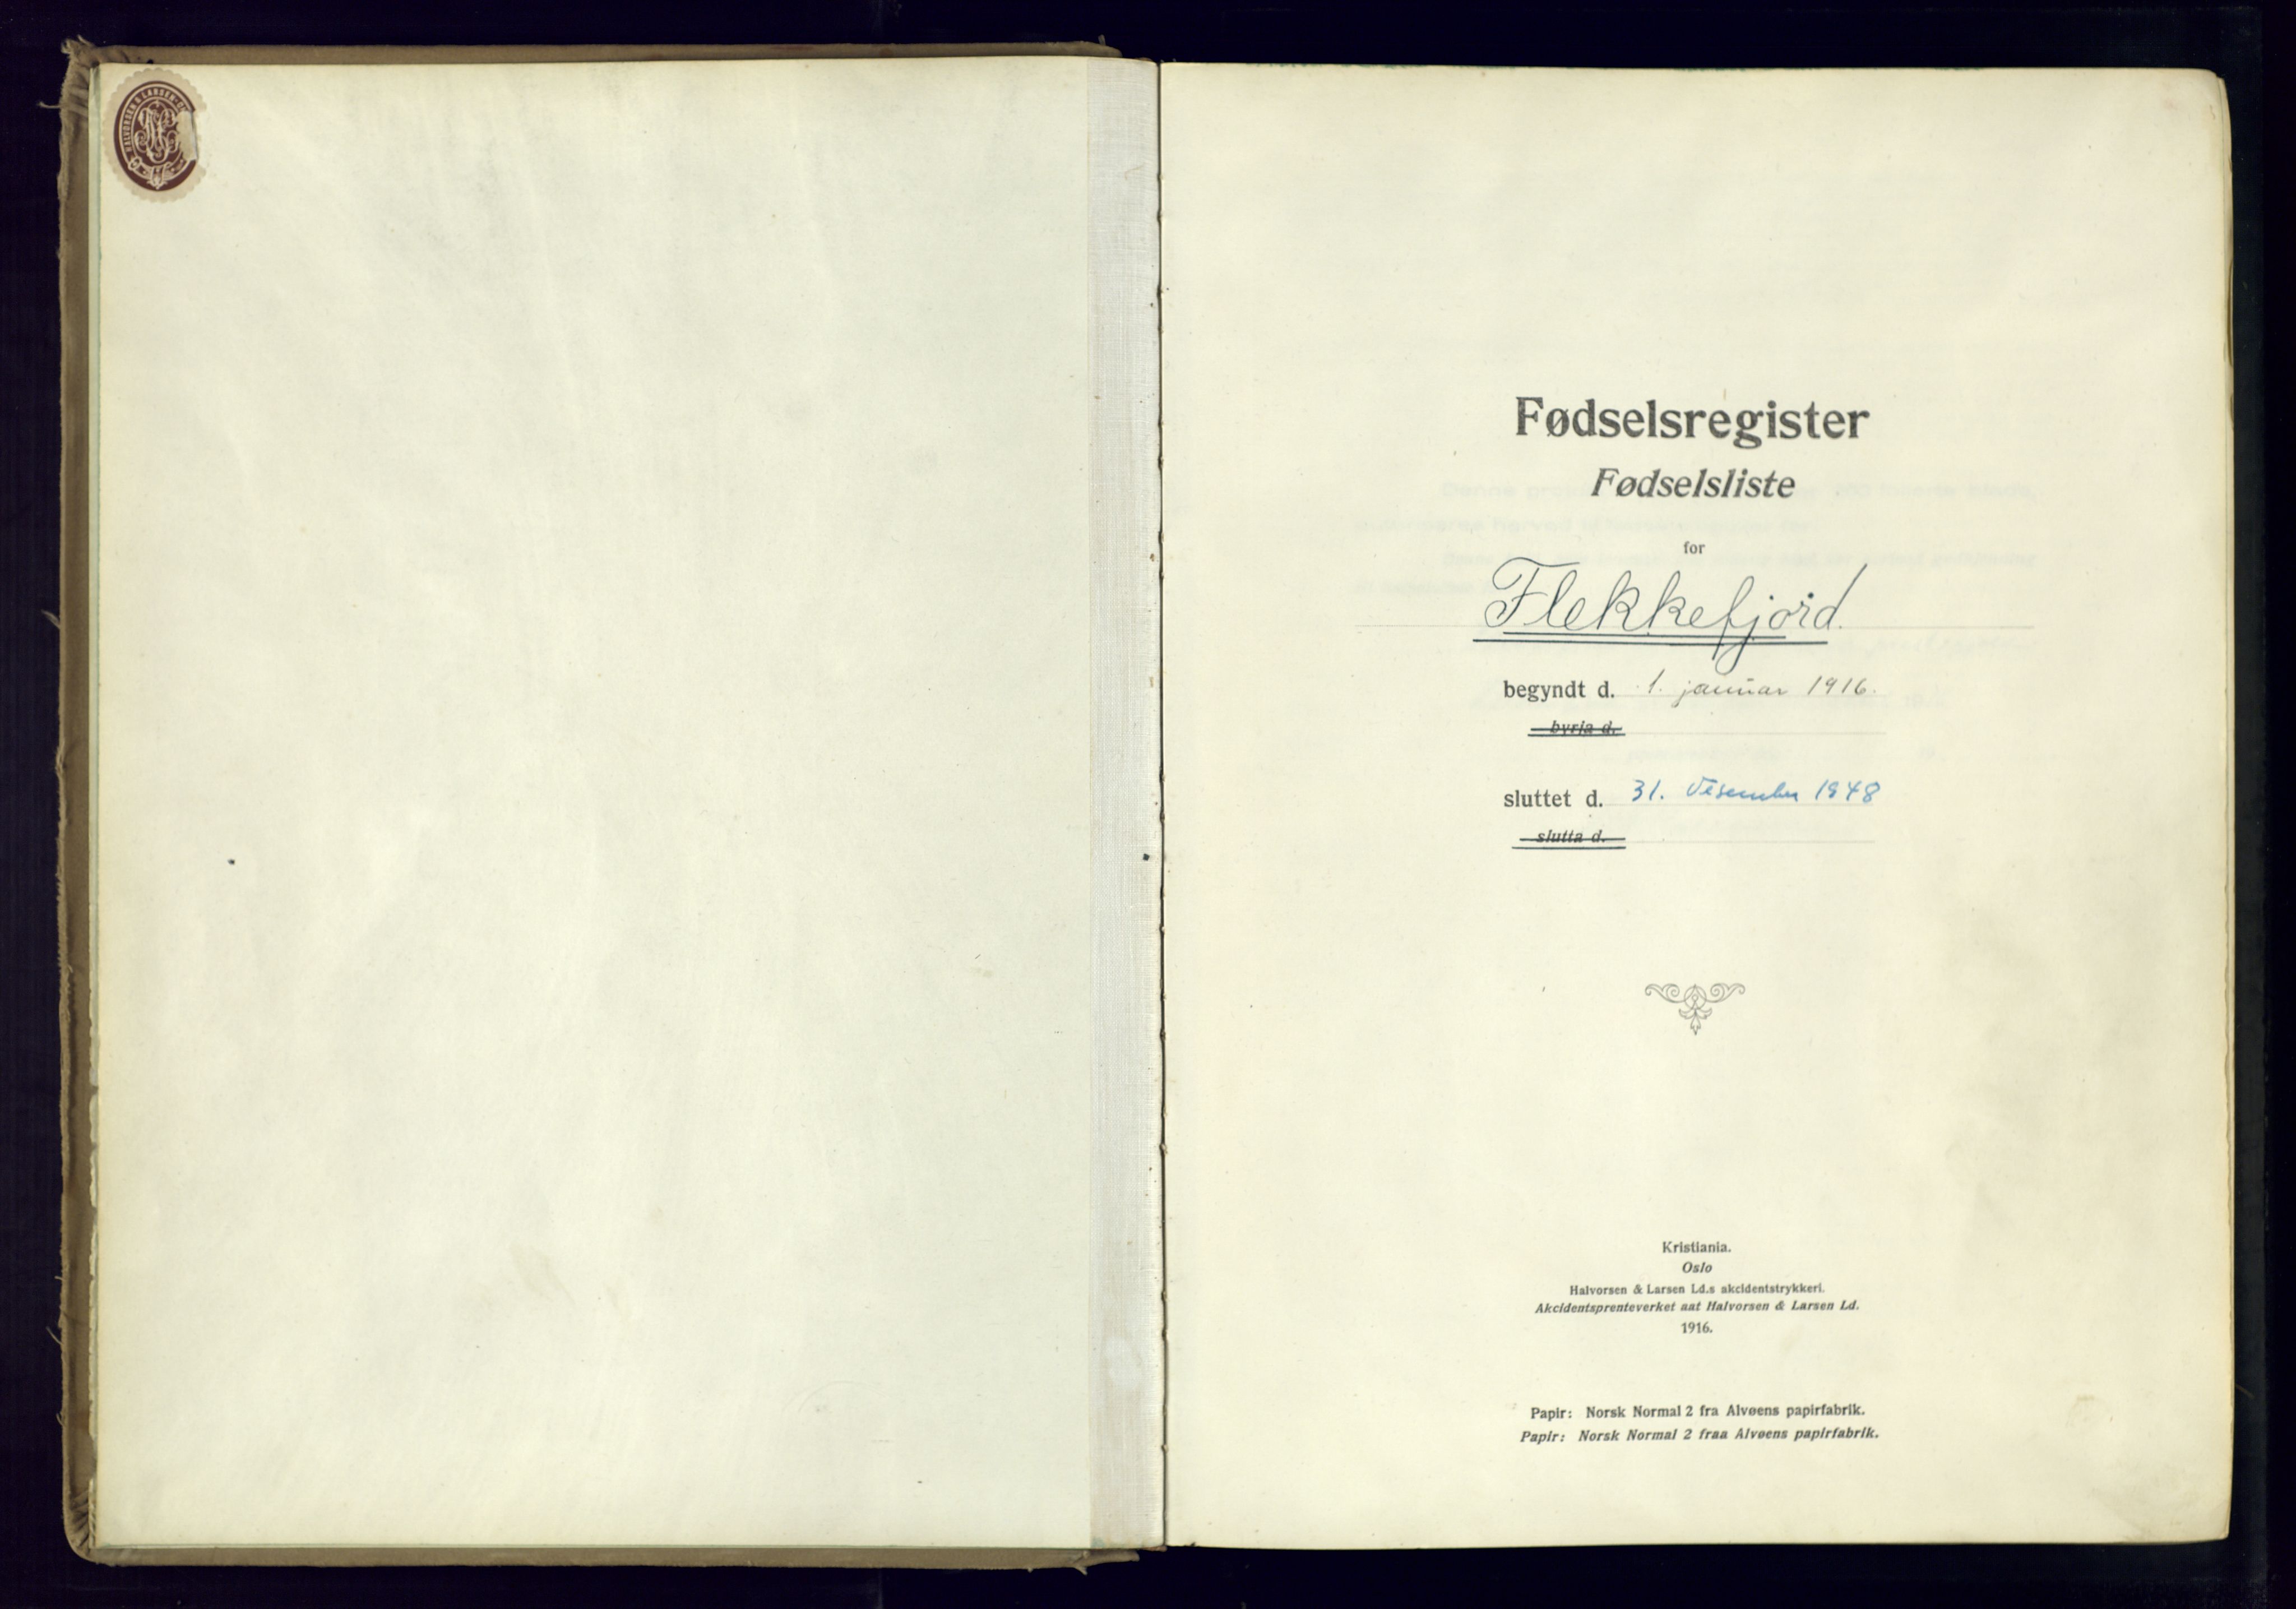 Flekkefjord sokneprestkontor, SAK/1111-0012/J/Ja/L0001: Birth register no. 1, 1916-1948